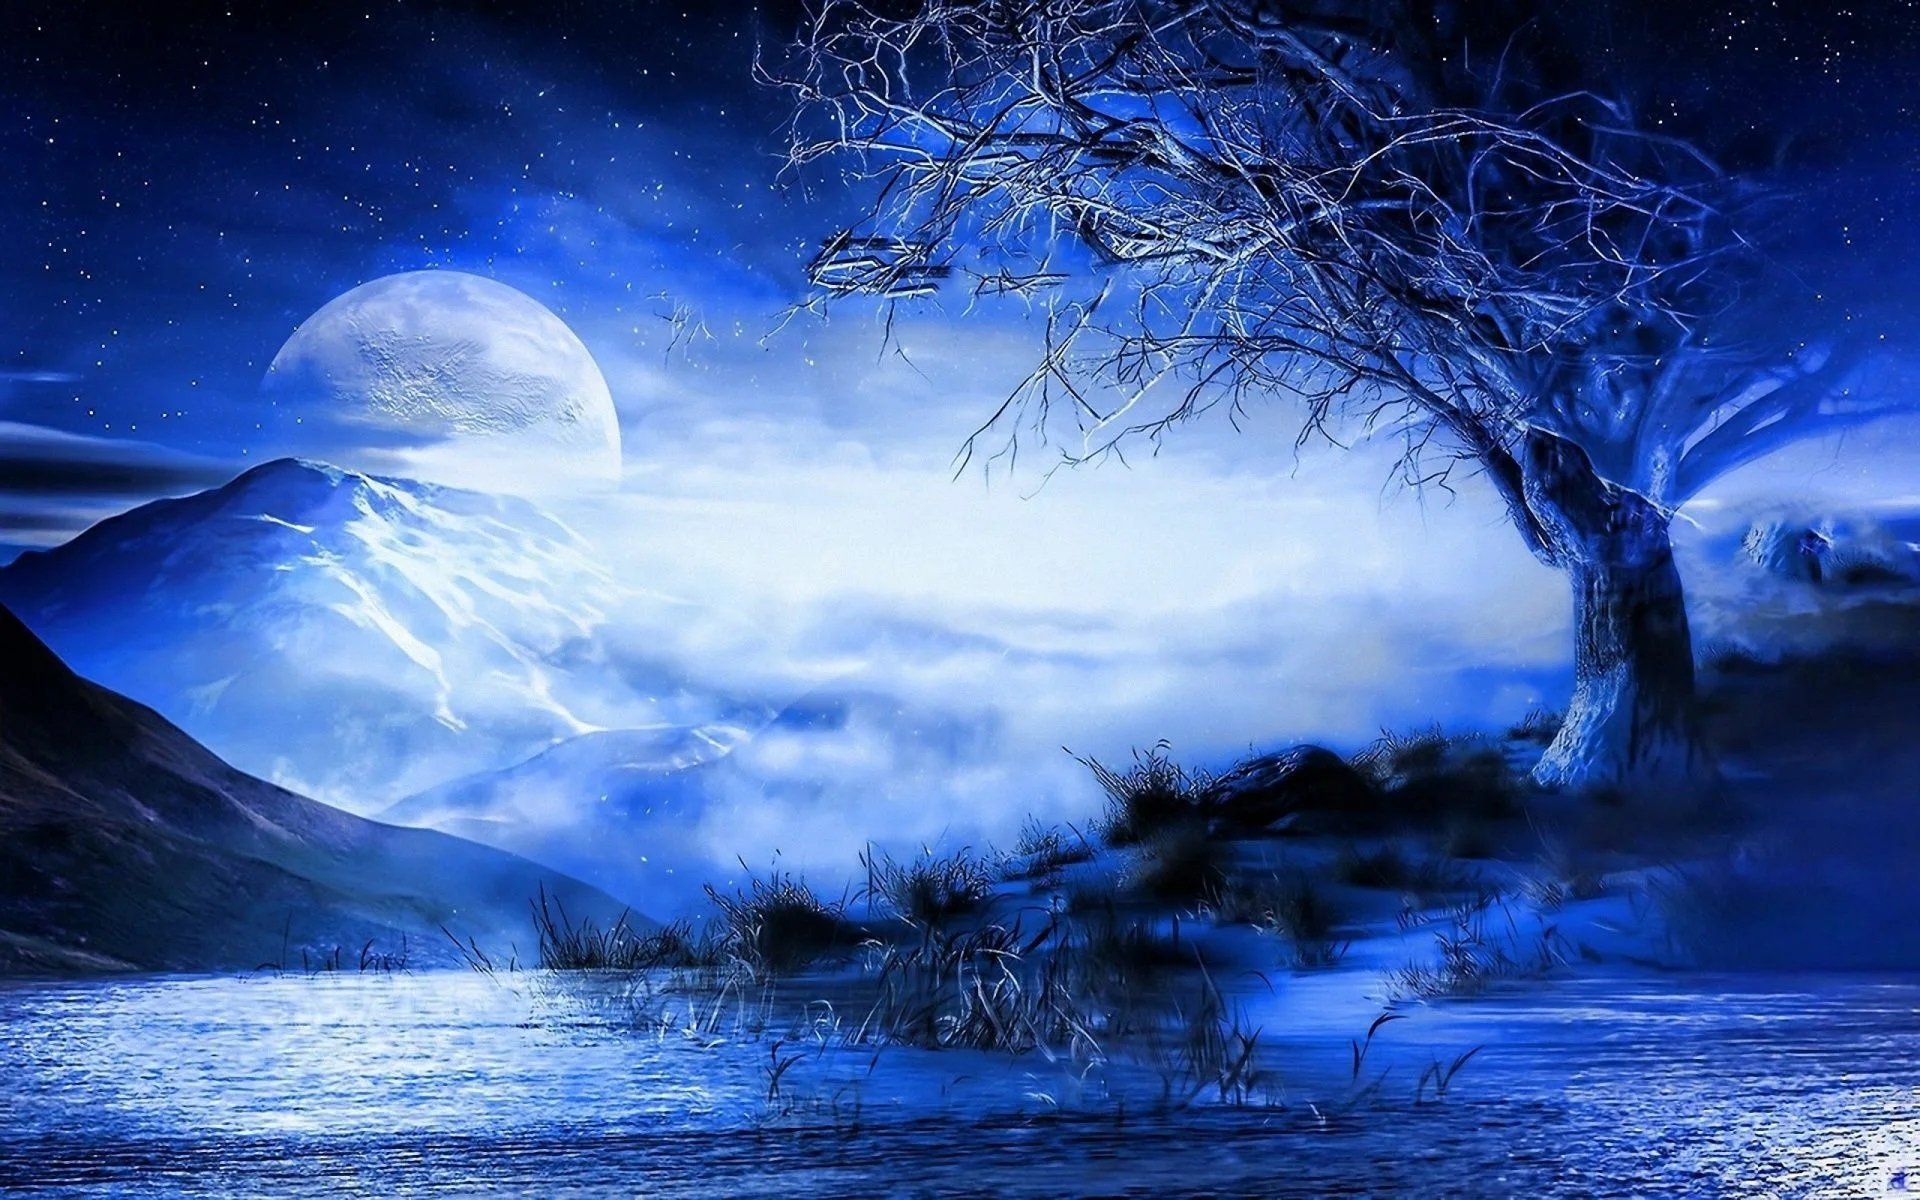 Чудесны лунные мартовские ночи впр 5. Фантастические пейзажи. Мистические пейзажи. Фэнтези пейзажи. Волшебный пейзаж.